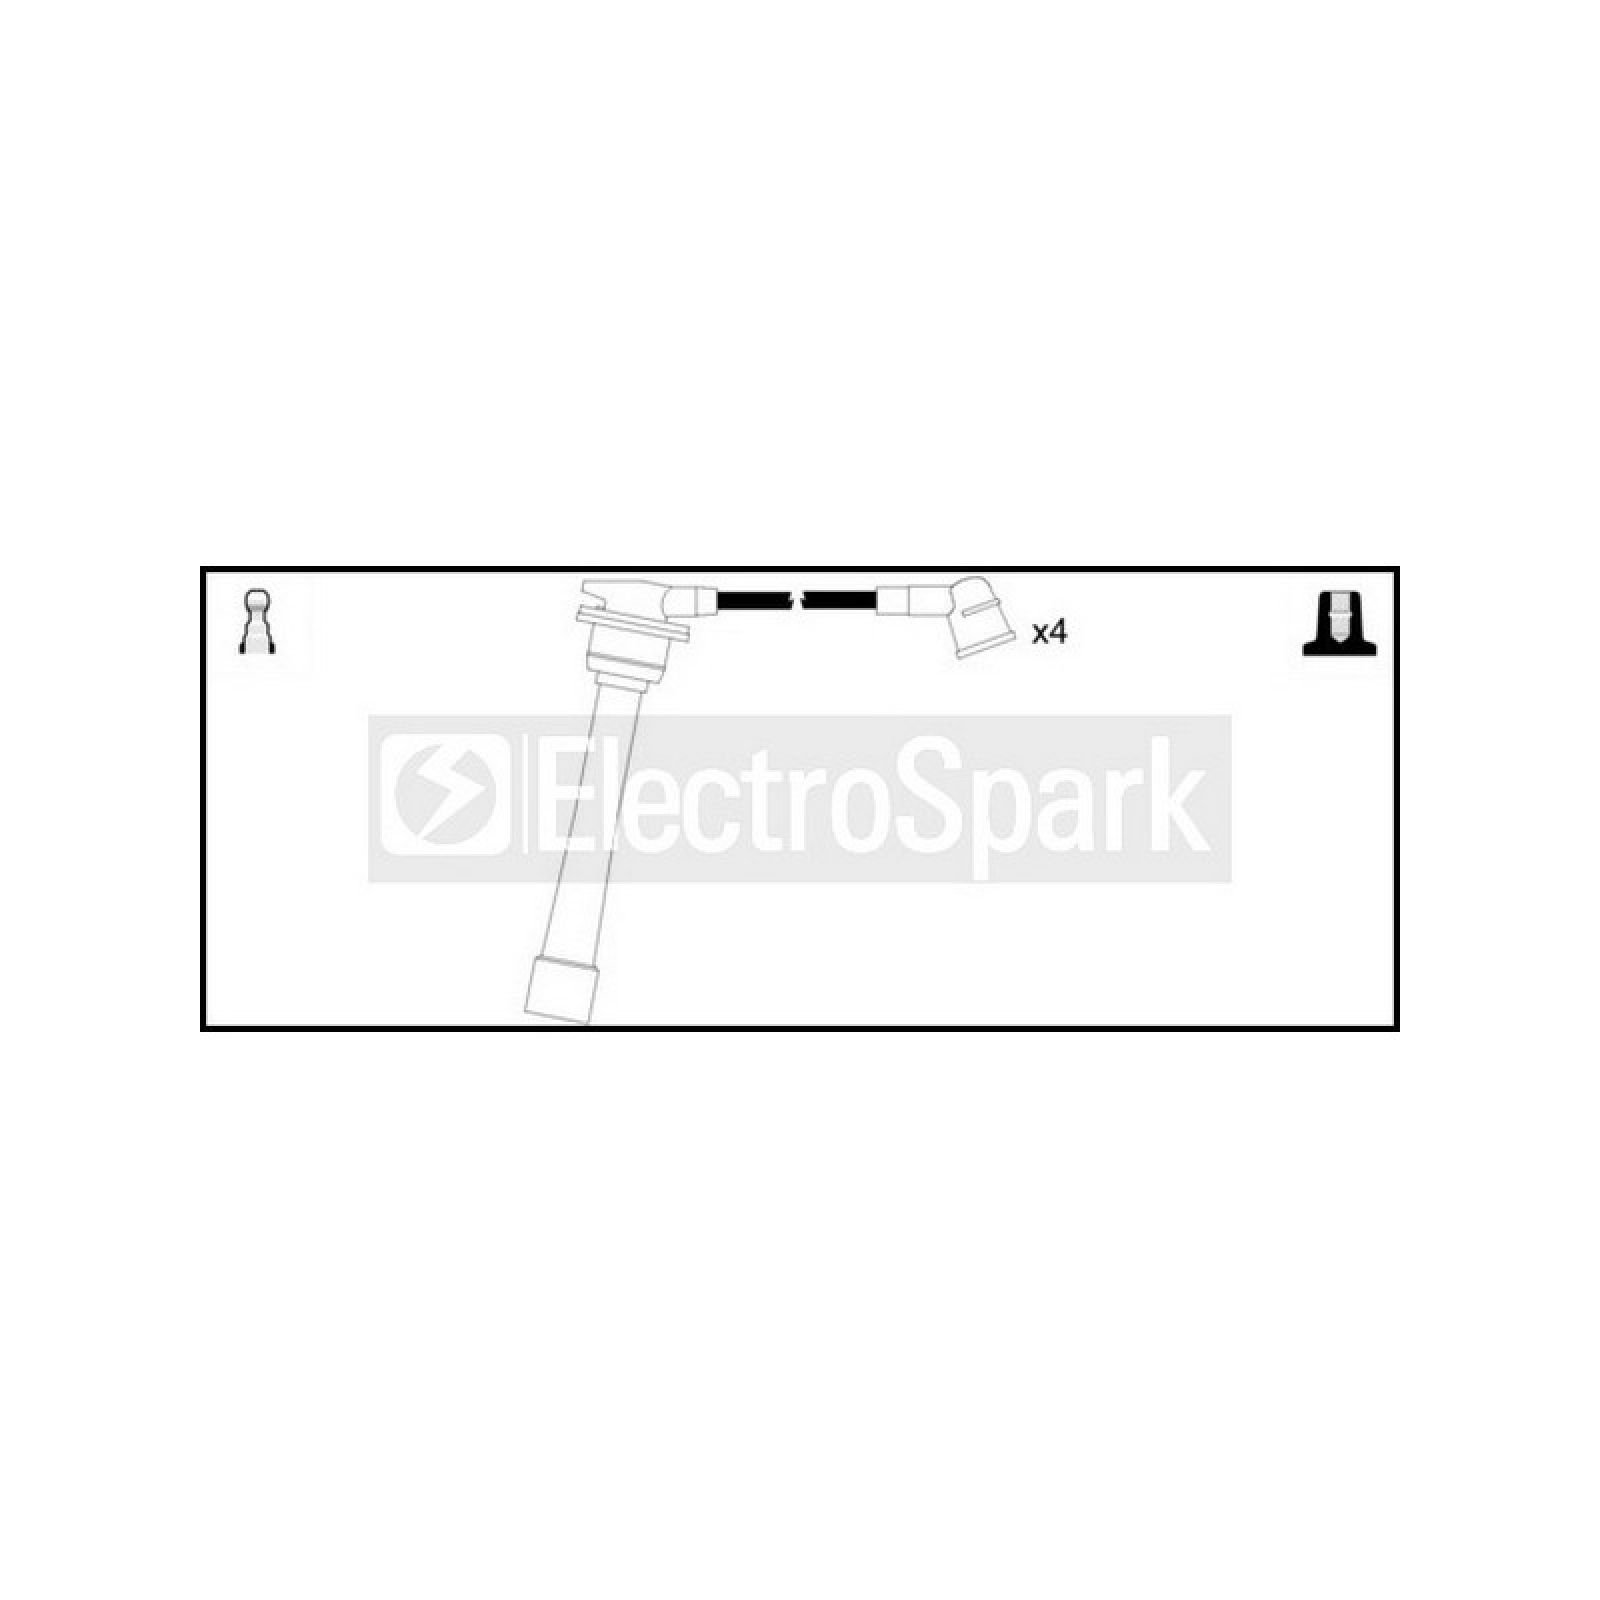 Electrospark OEK766 Zundkabel von Standard Motor Products